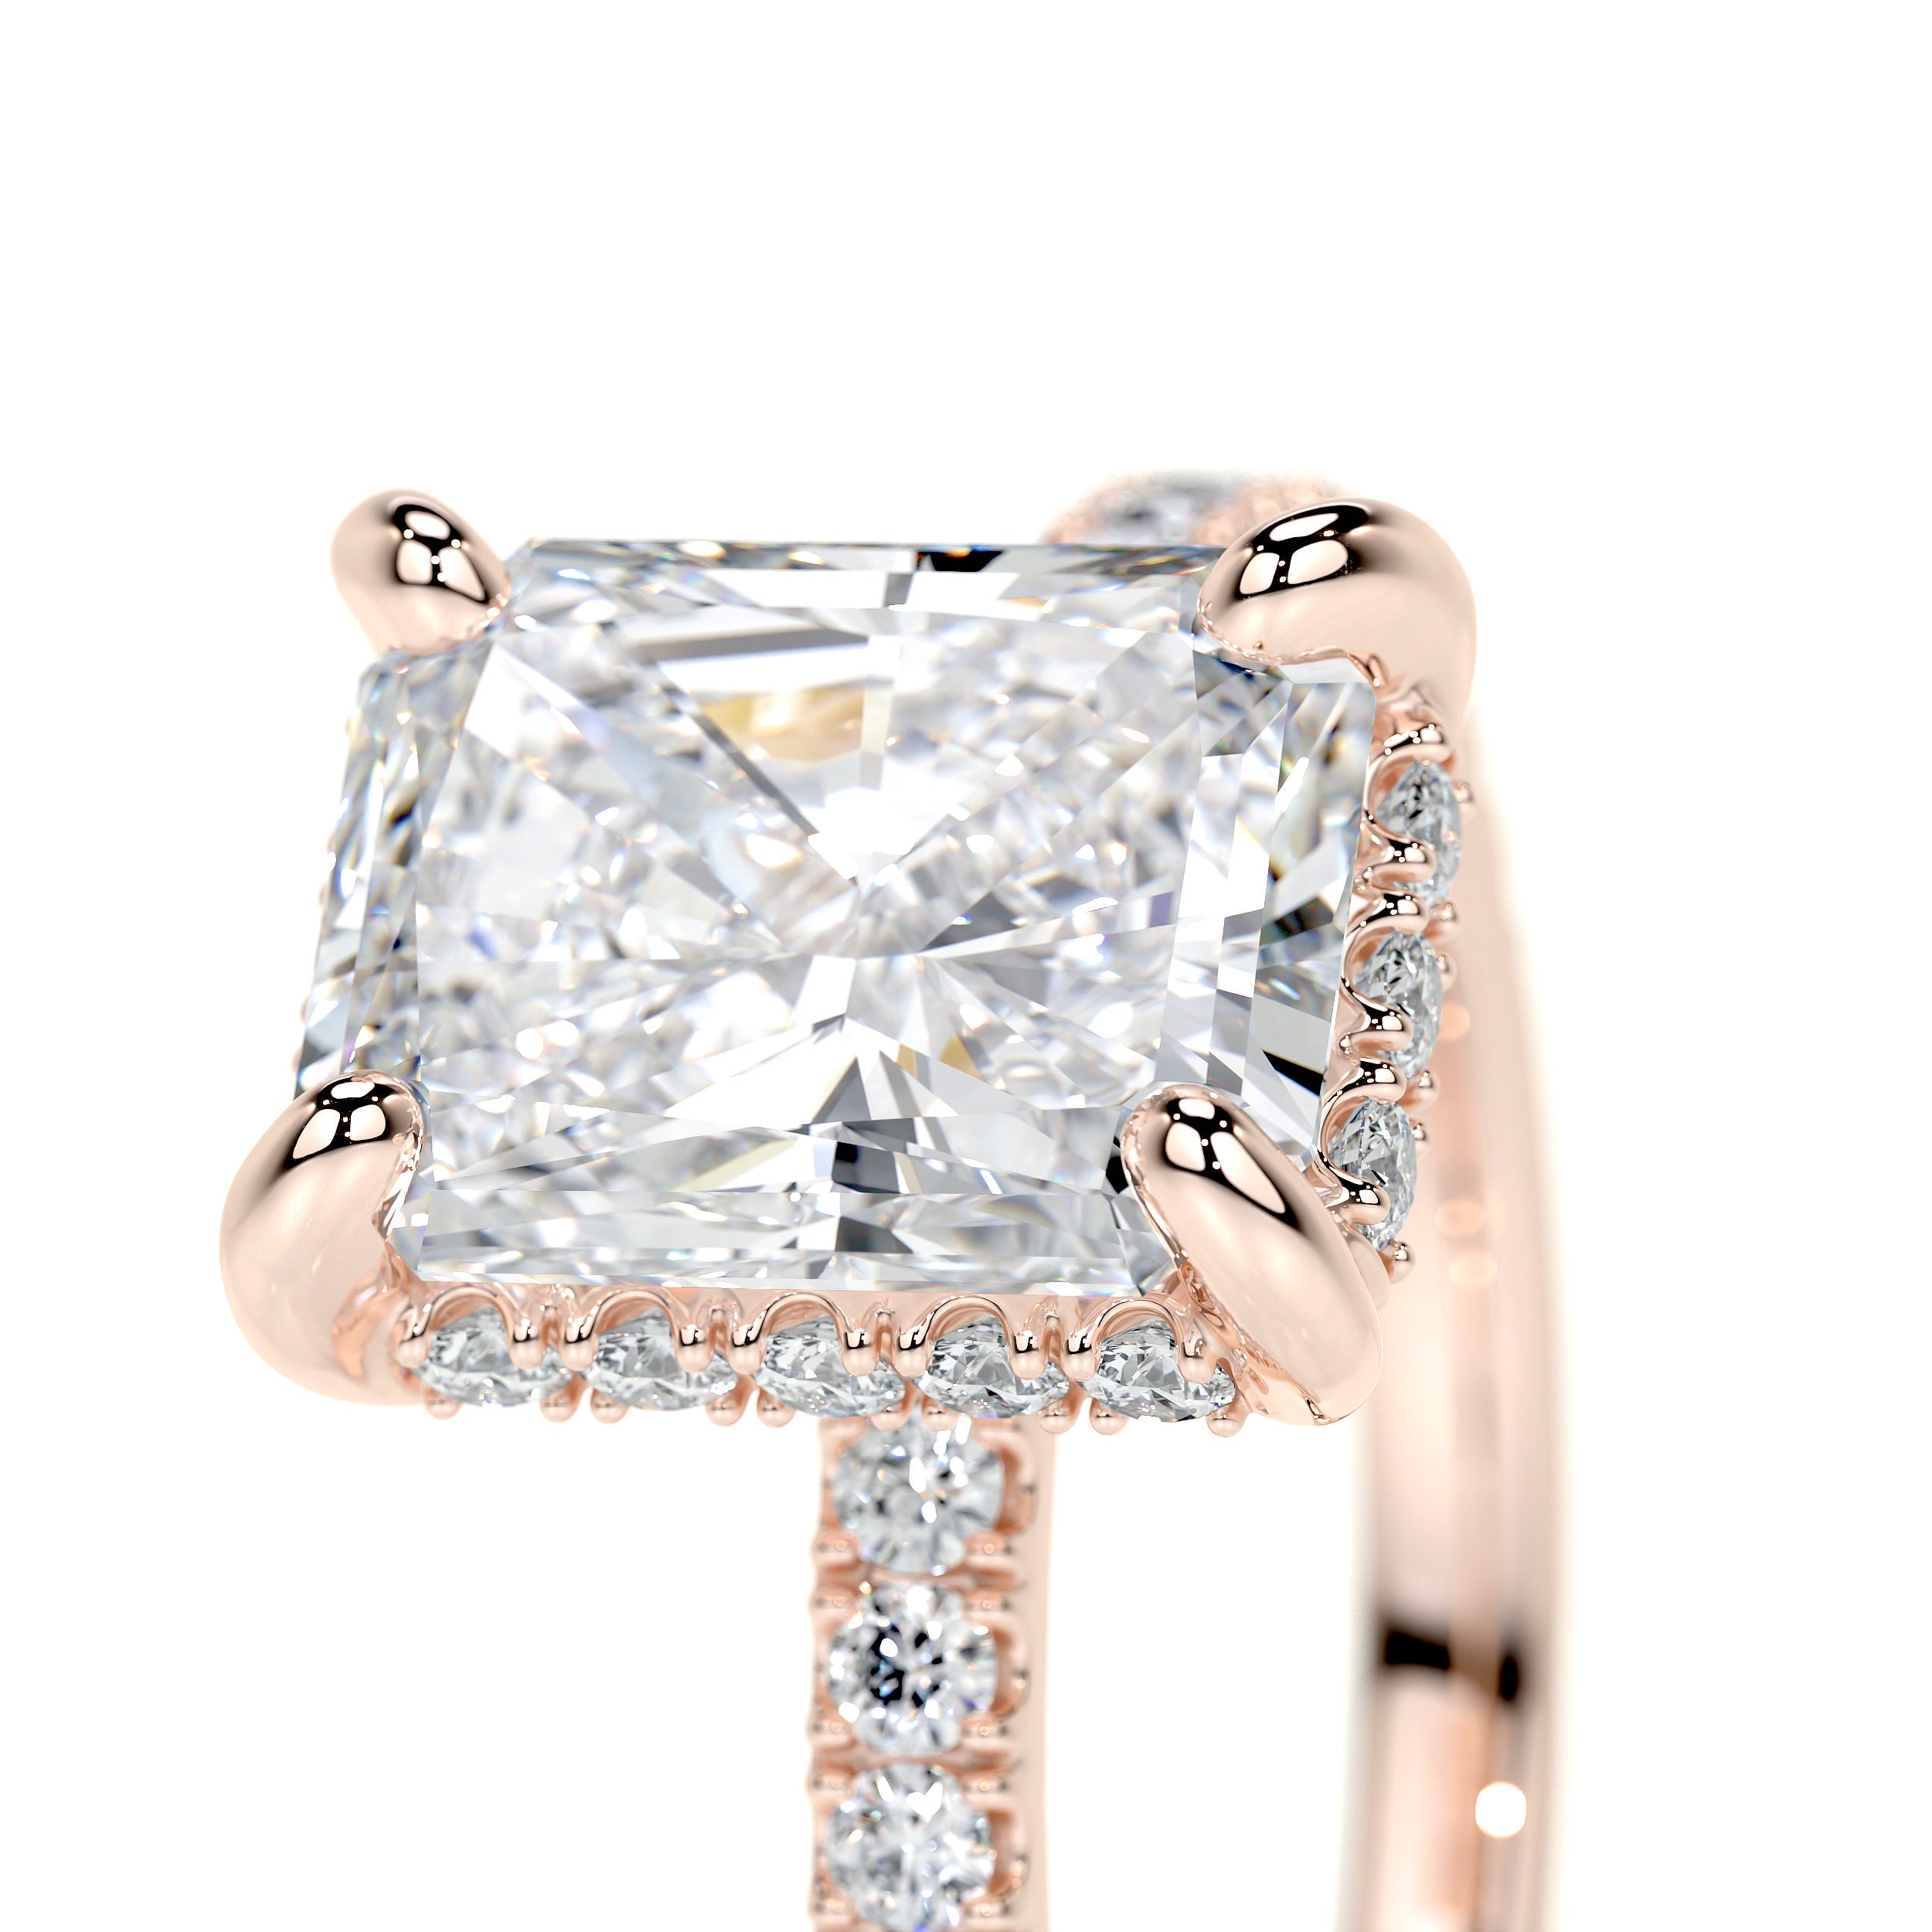 Luna Lab Grown Diamond Ring   (2 Carat) -14K Rose Gold